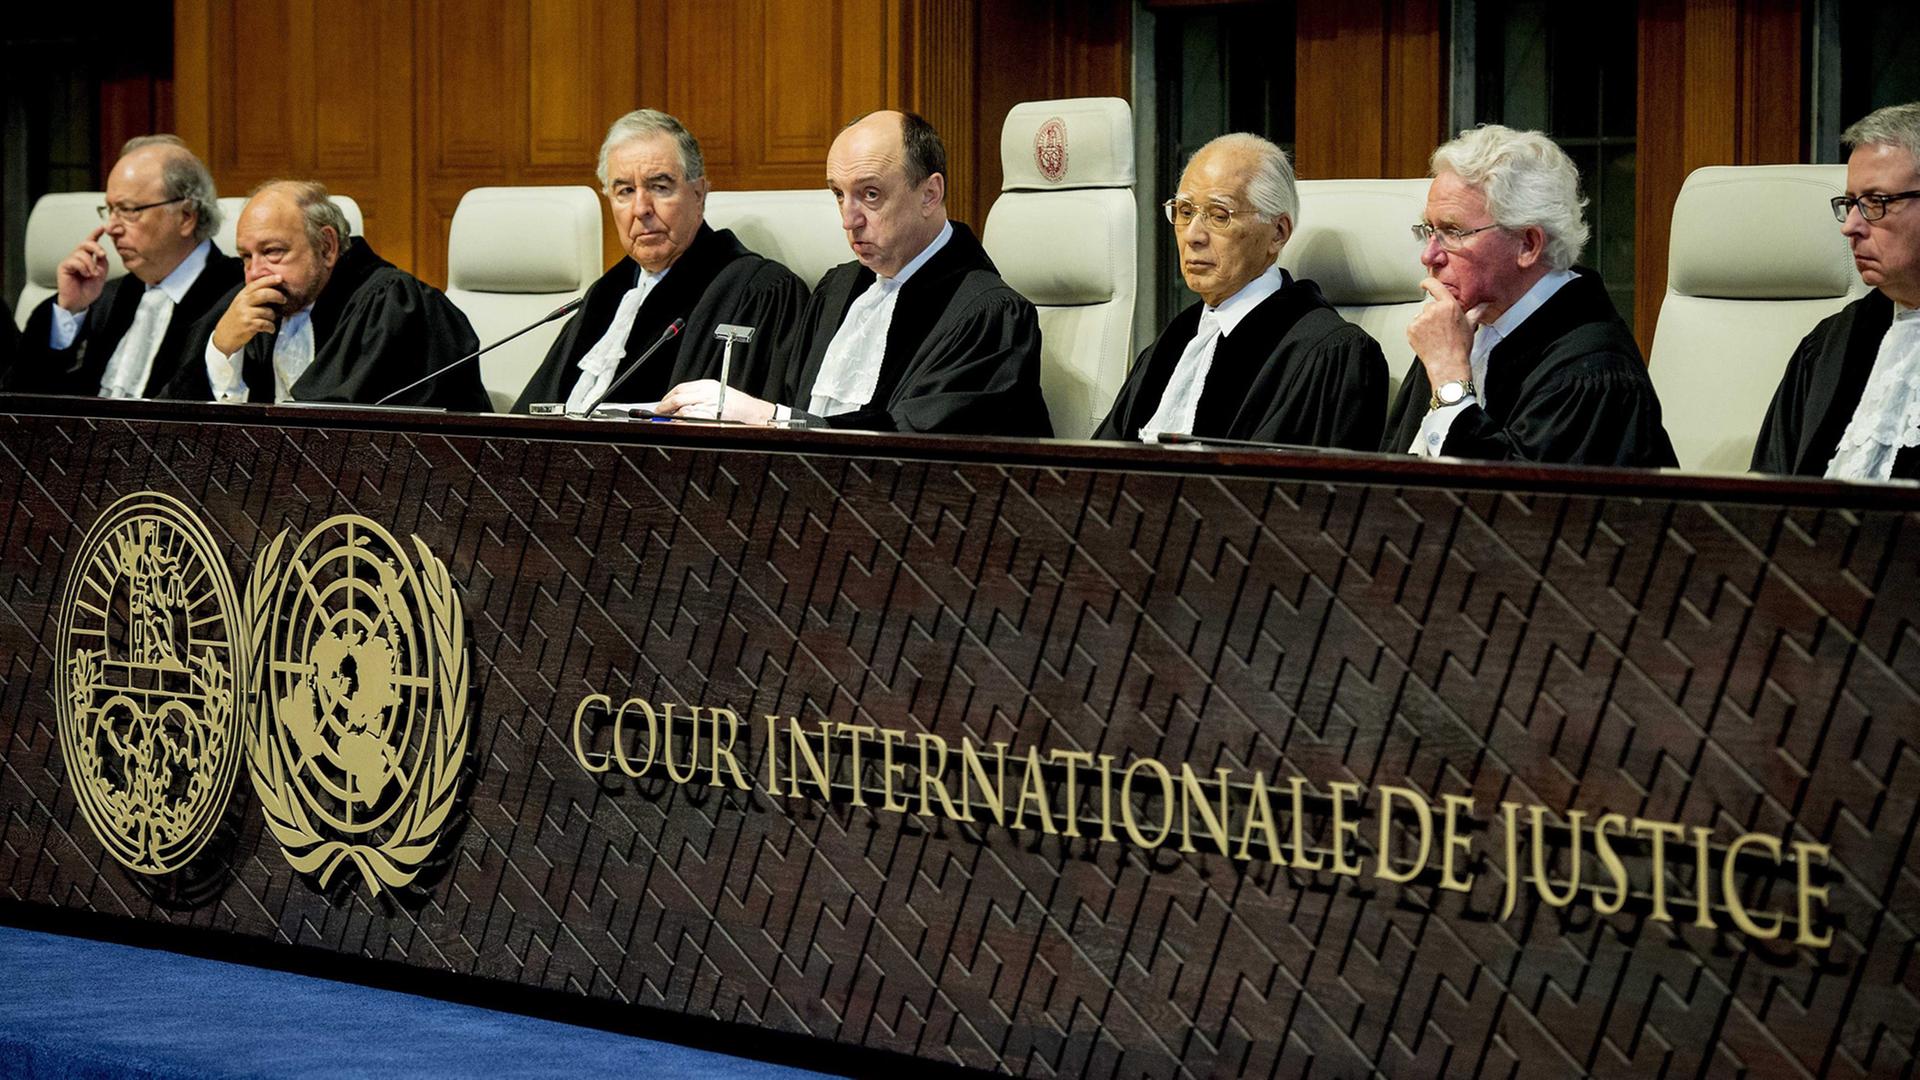 Internationaler Gerichtshof in Den Haag: Urteil zum Kroatienkrieg am 3. Februar 2015; weder Serbien noch Kroatien sind demnach schuldig, in den Jahren 1991-95 Völkermord begangen zu haben.